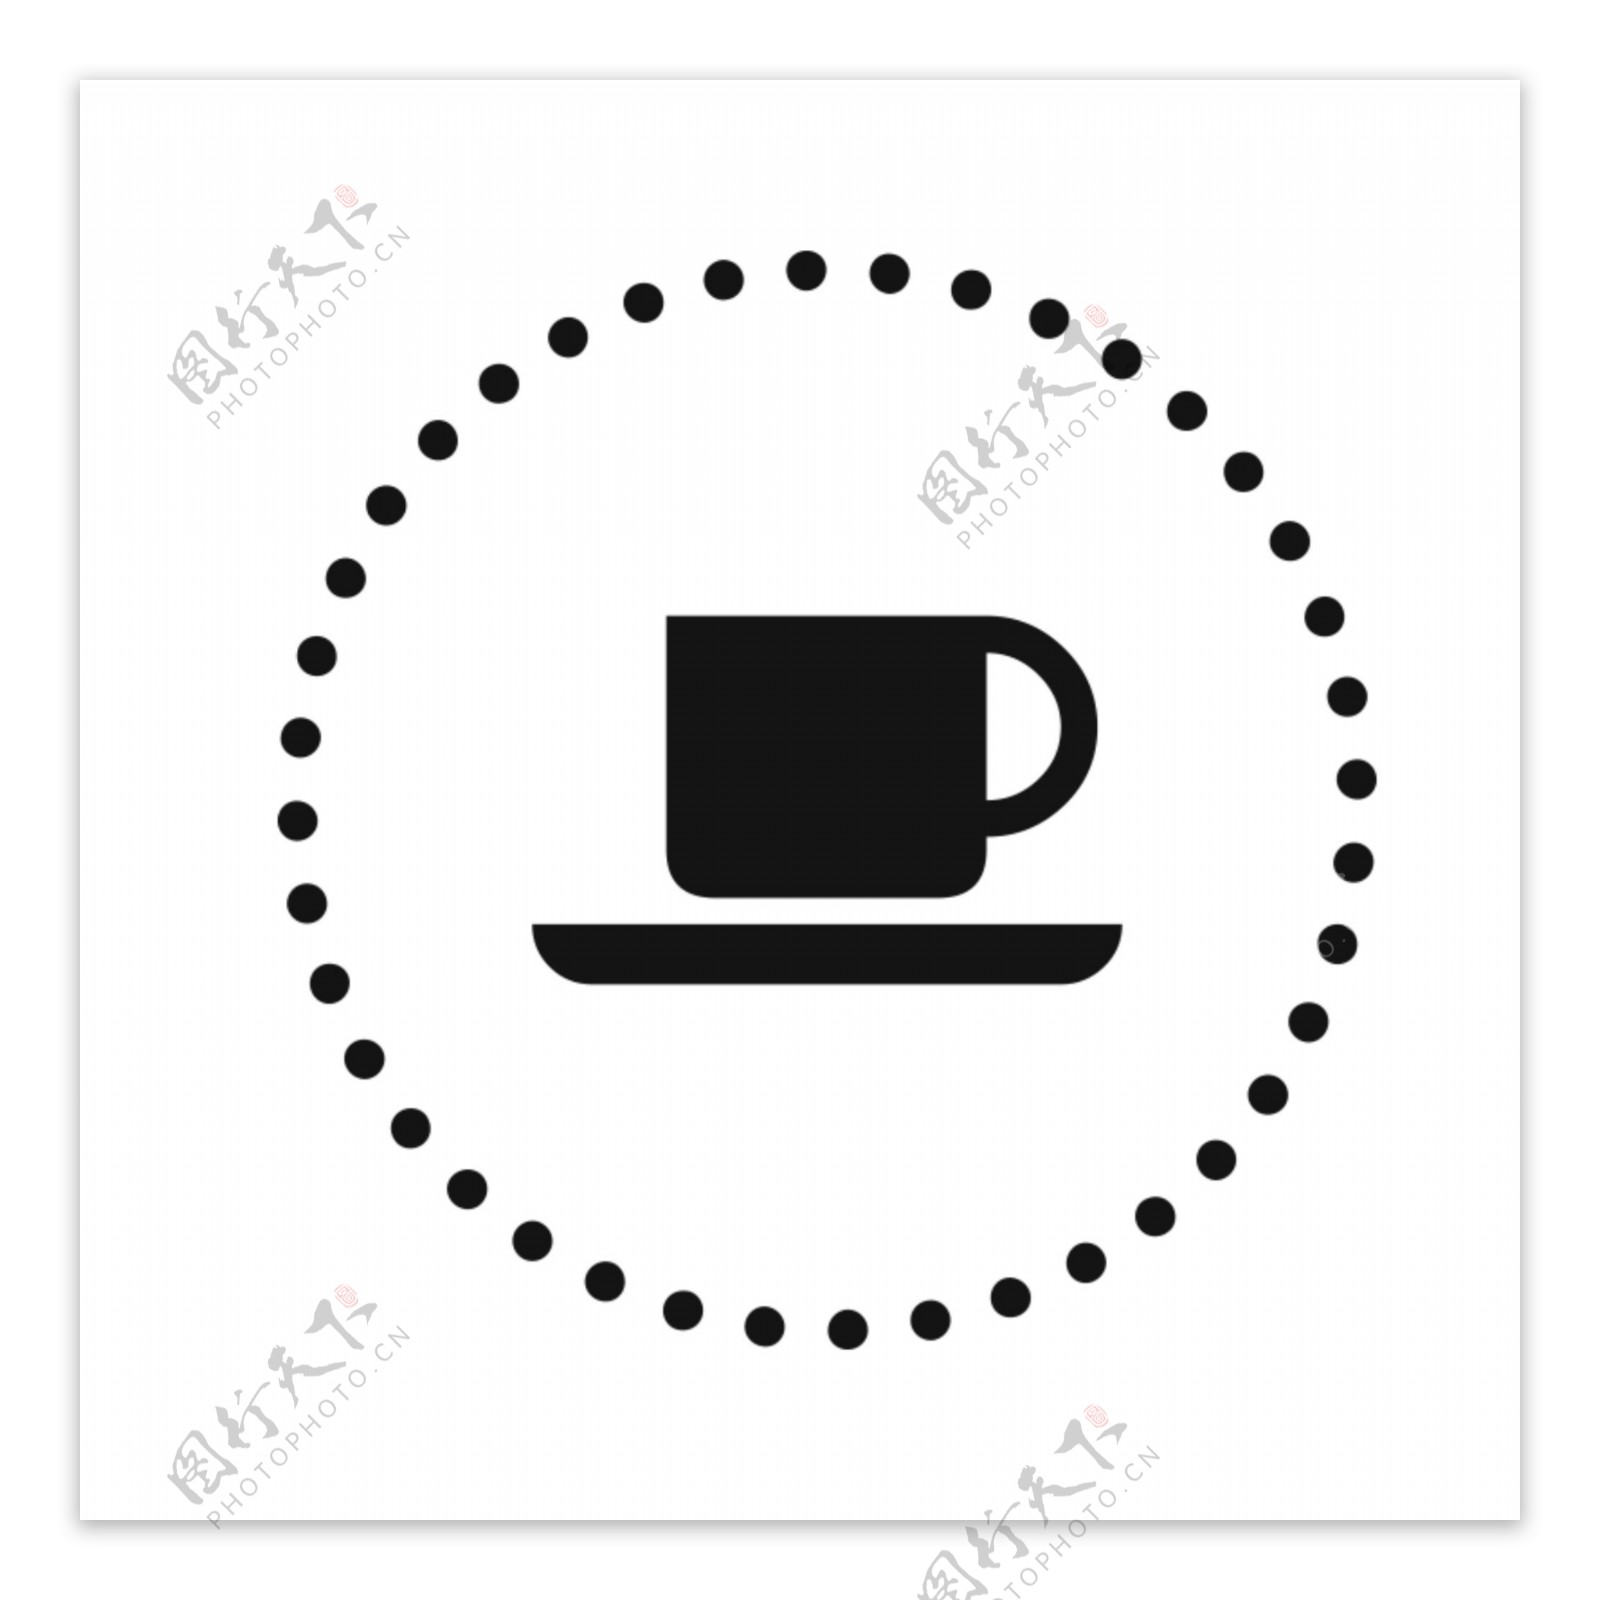 休闲咖啡图标